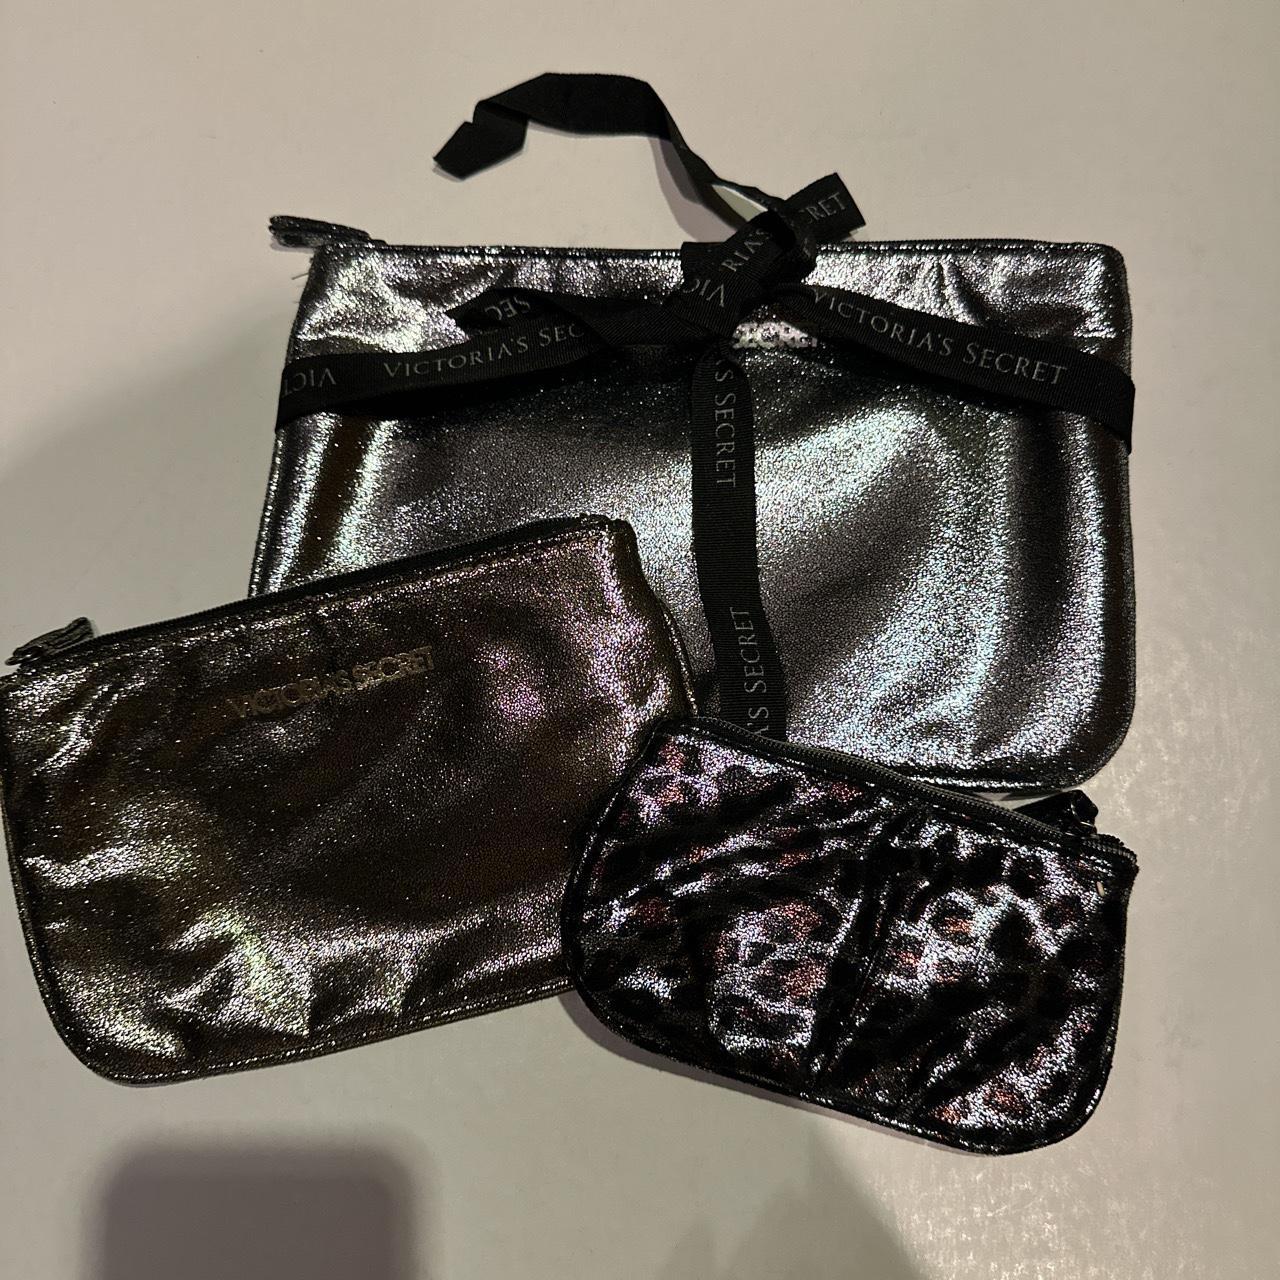 Victoria secret 3 bag set Shimmery soft material 1... - Depop